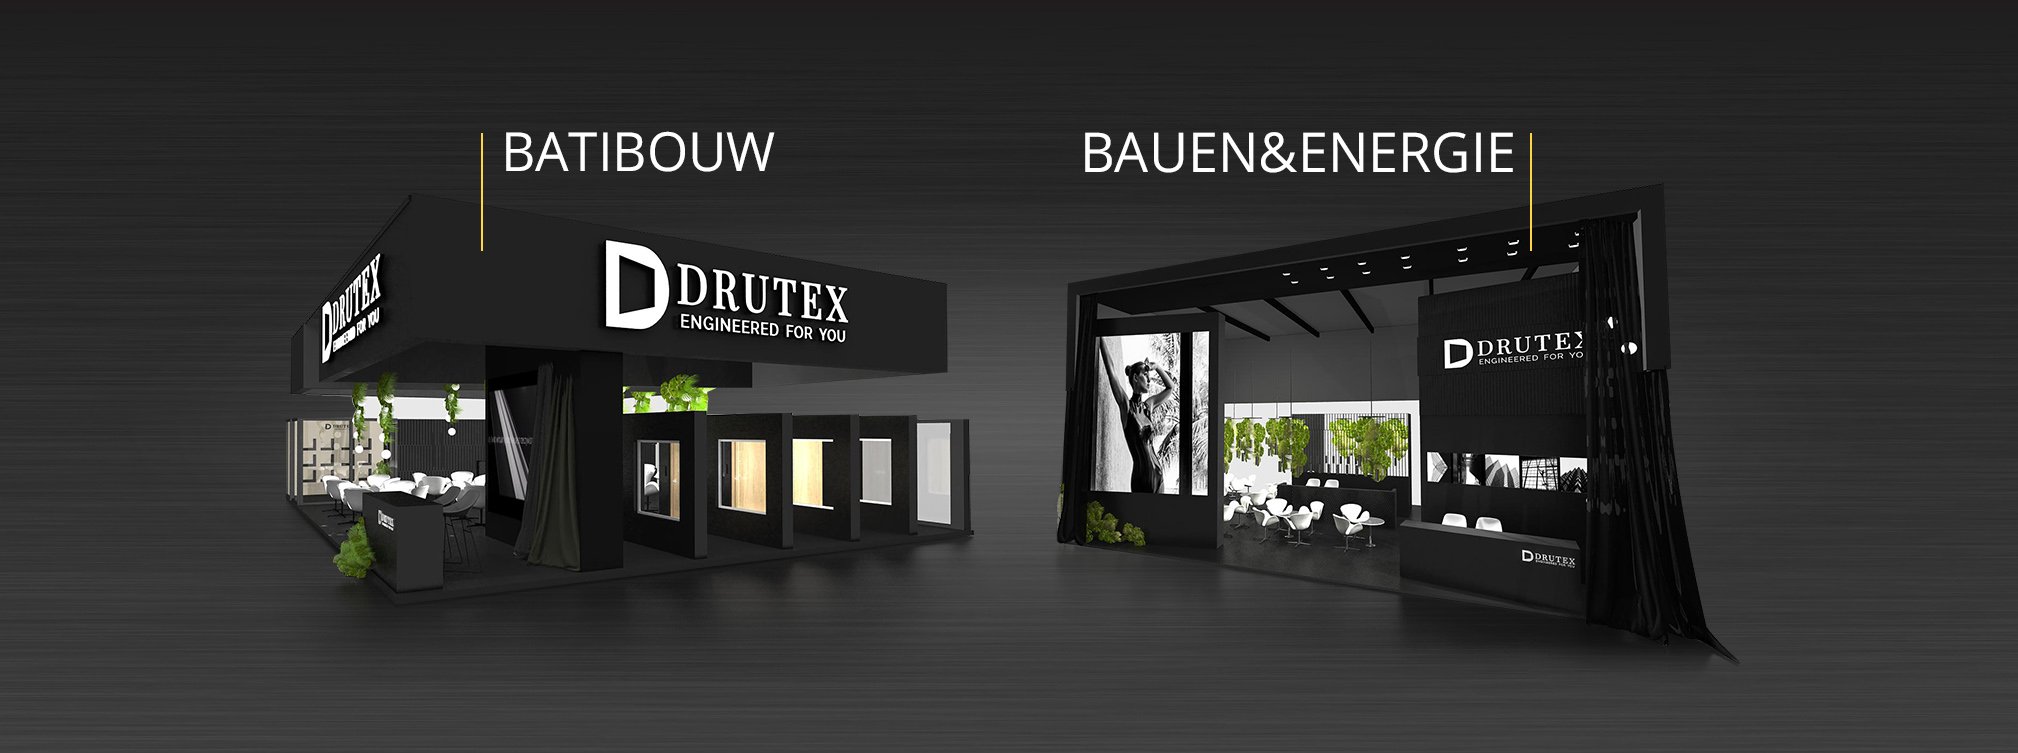 Drutex participe aux salons en Autriche et en Belgique